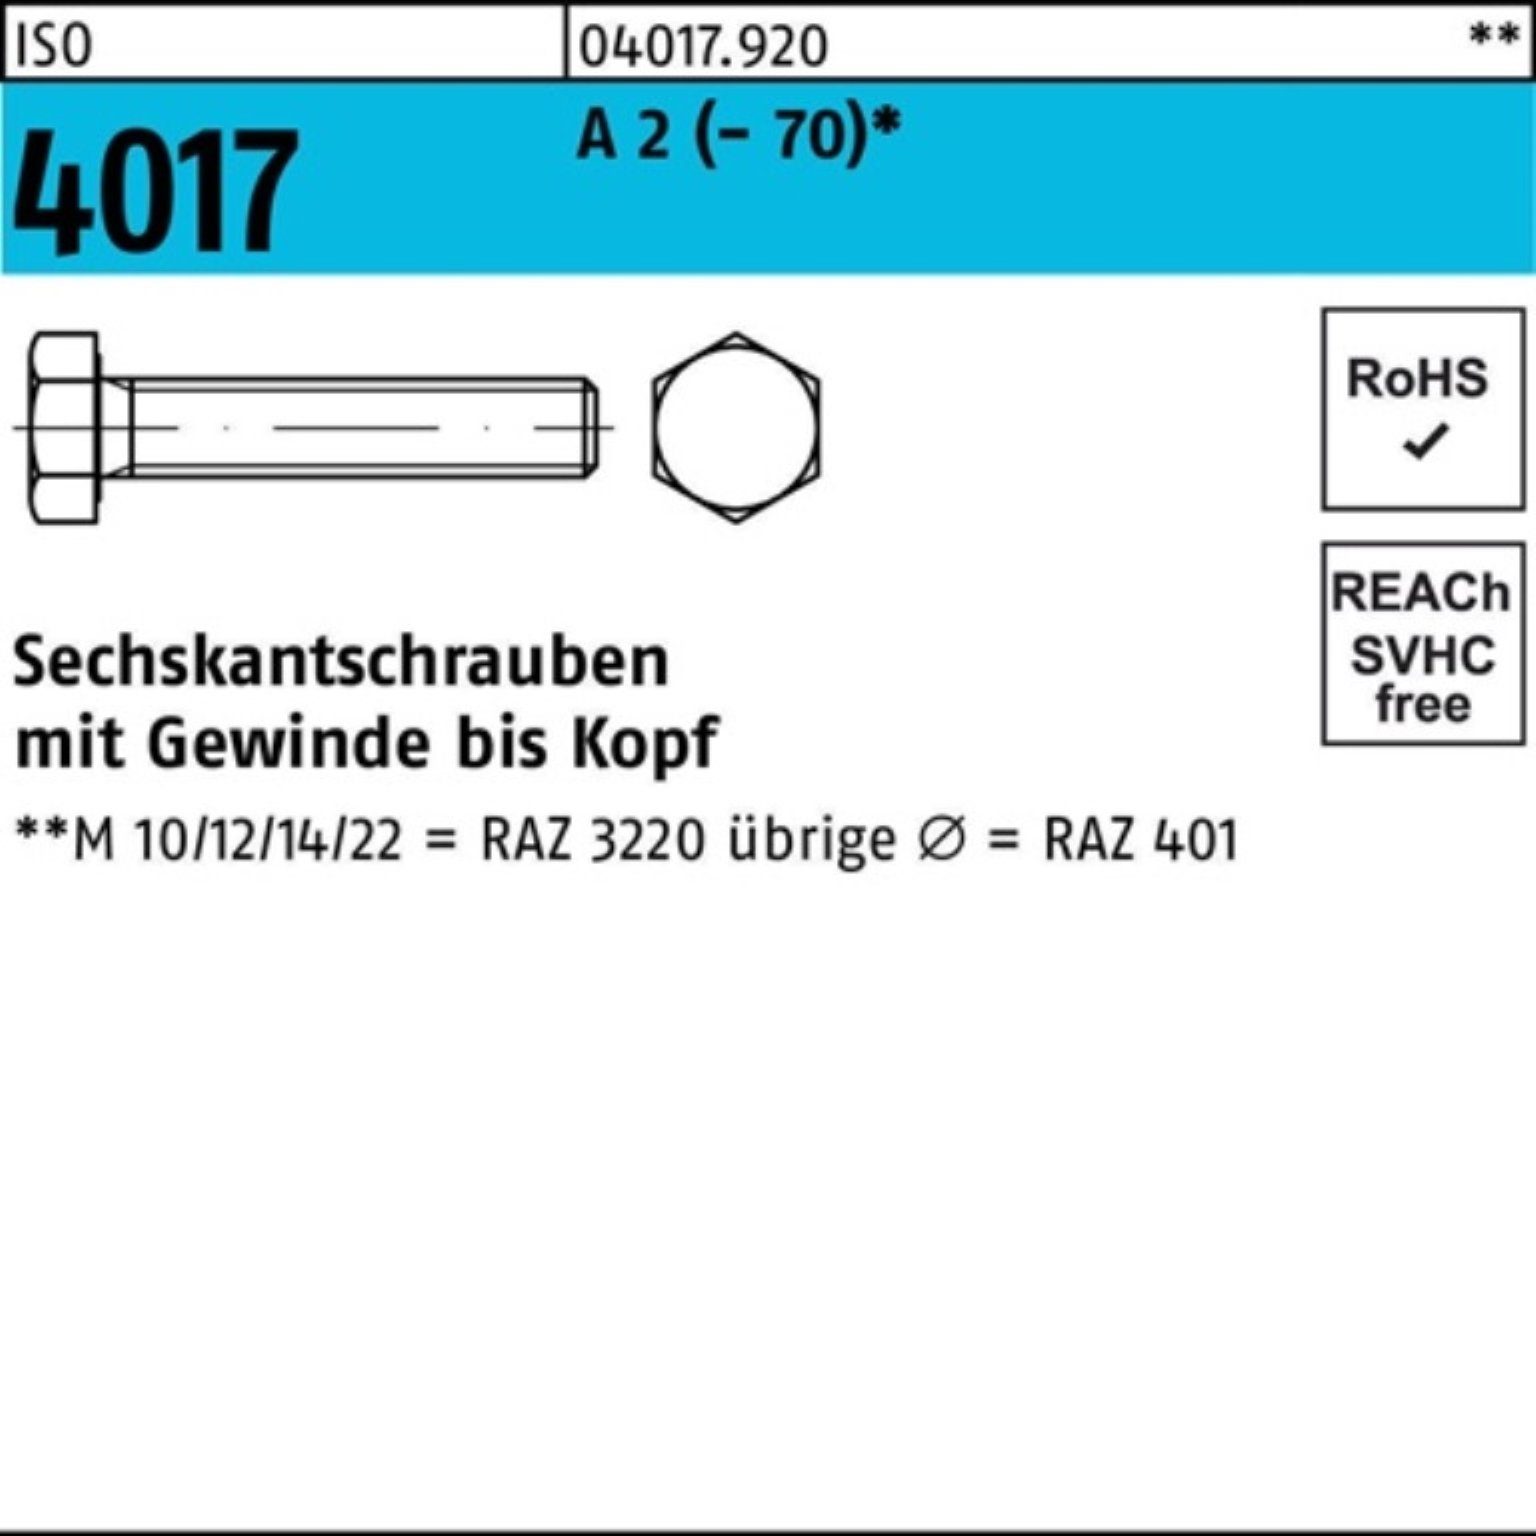 Sechskantschraube 25 2 Pack M16x 4017 100er ISO Sechskantschraube VG Stück (70) A Bufab 130